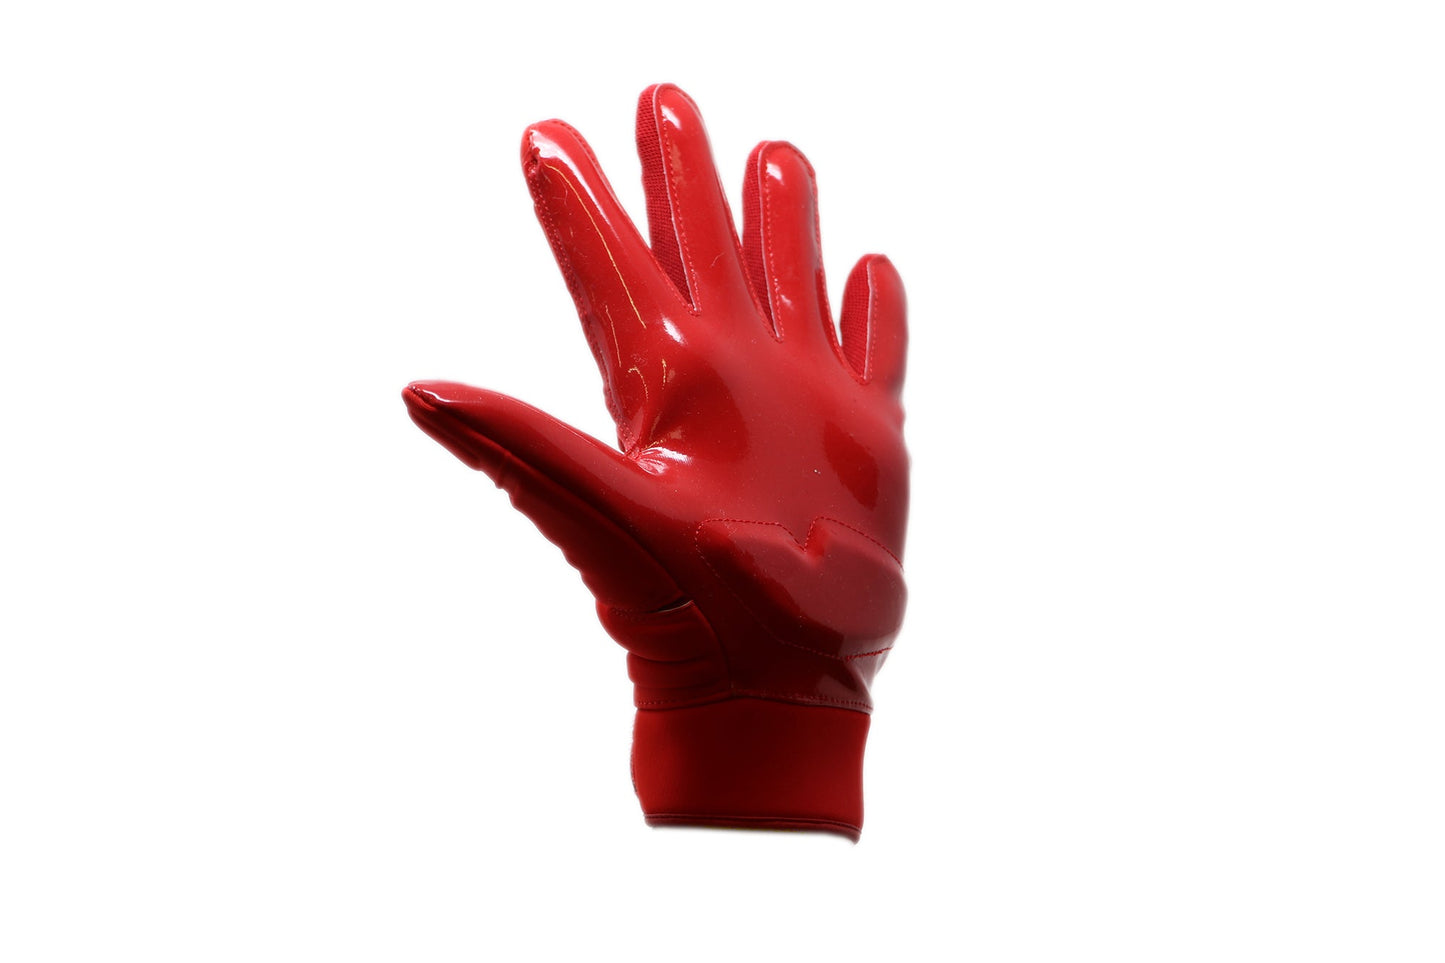 FLG-03 pro linemen rękawiczki do futbolu amerykańskiego, OL,DL, czerwone